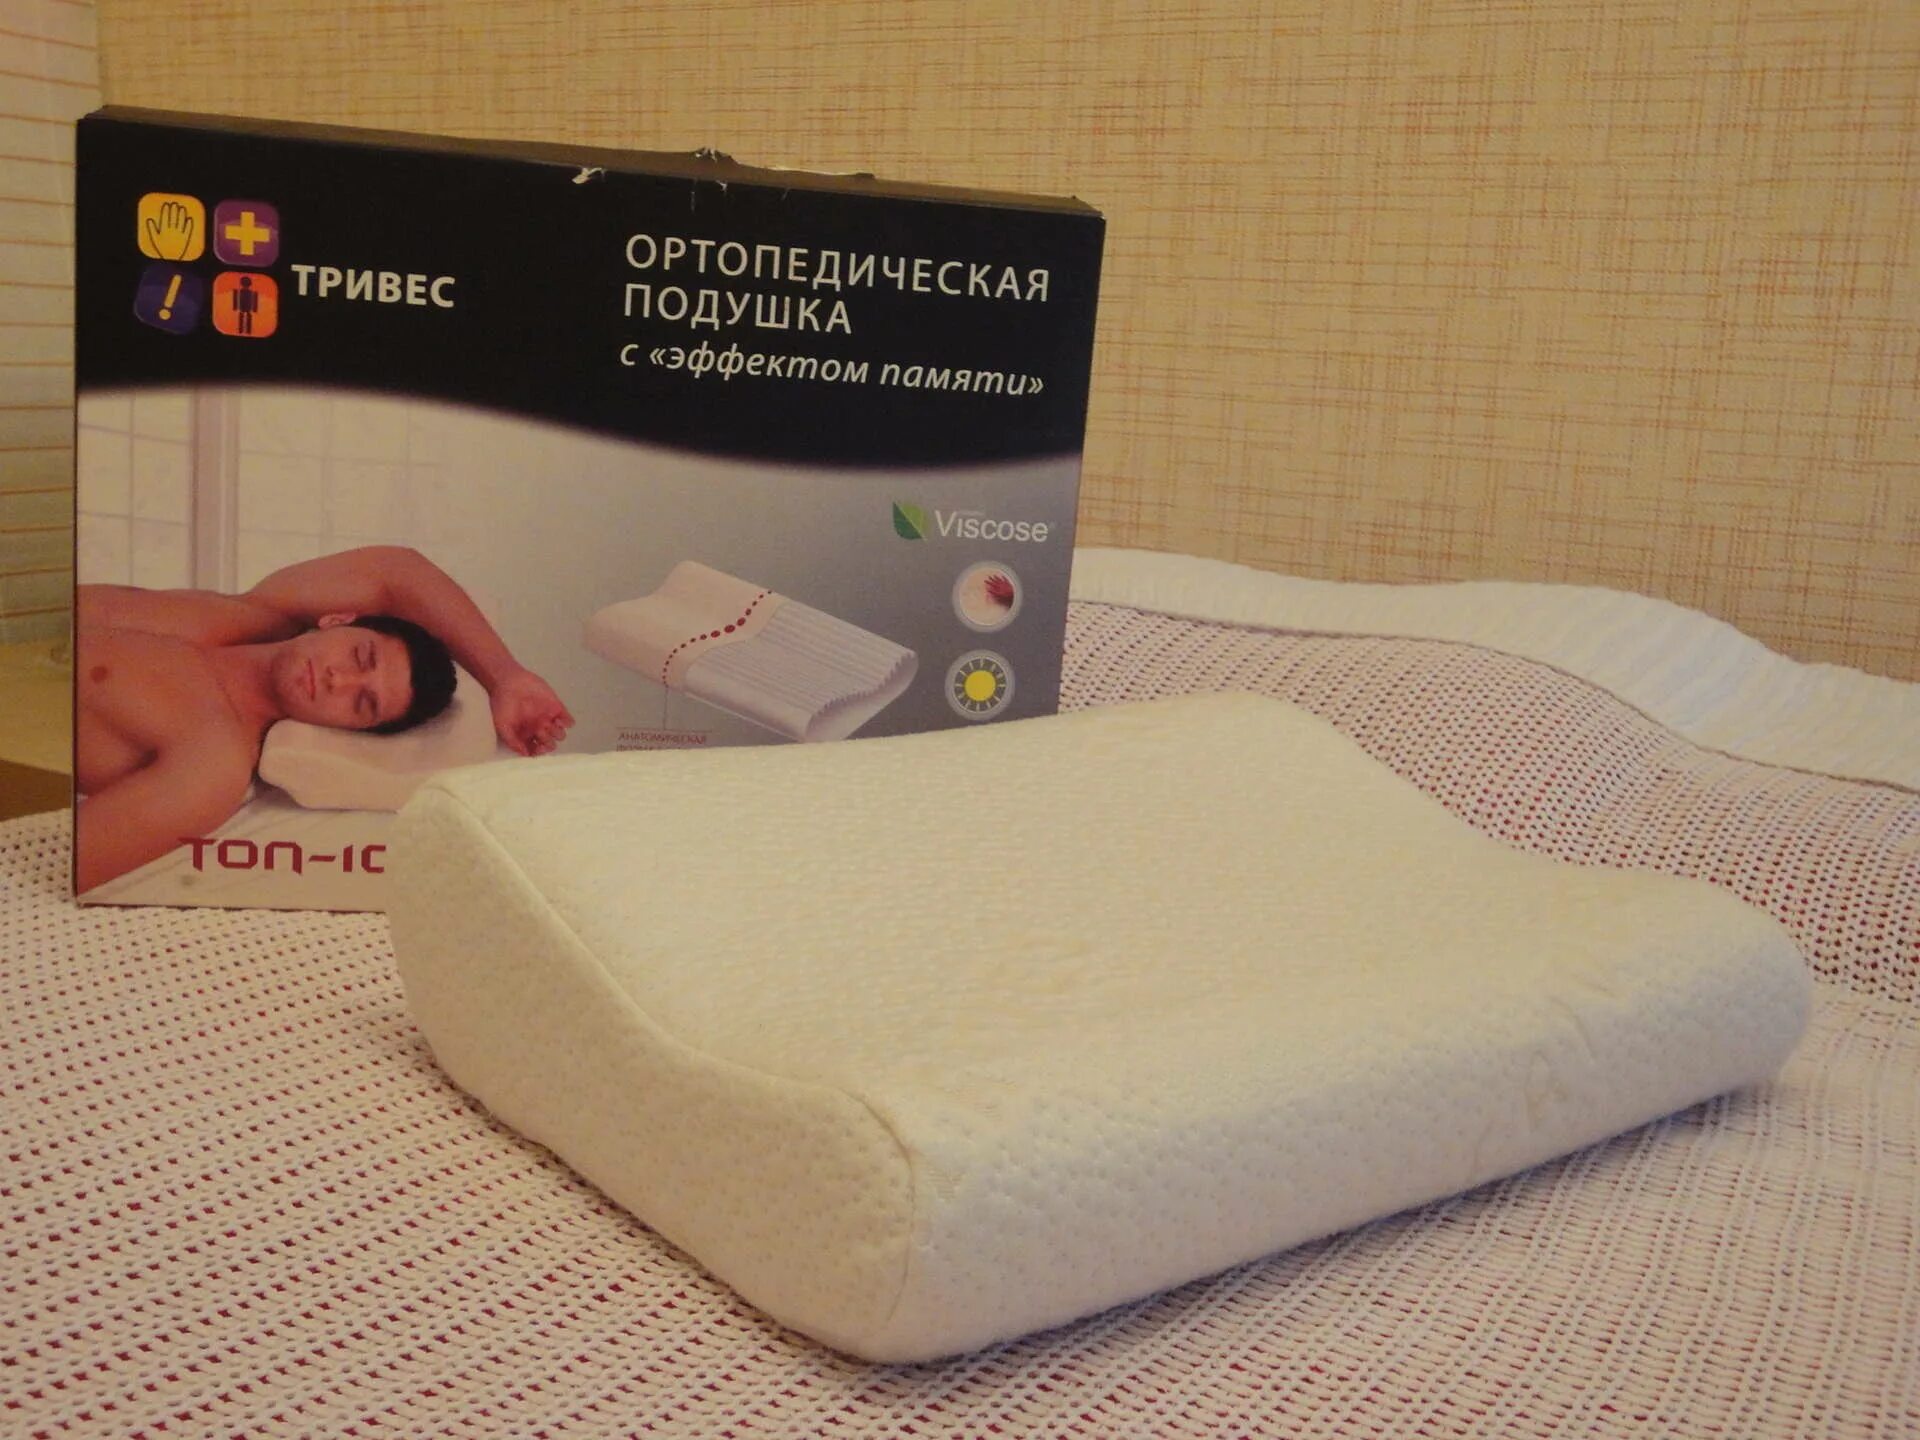 Ортопедическая подушка для сна. Подушка ортопедическая с эффектом памяти. Ортопедические подушки для сна при остеохондрозе. Правильная подушка для сна. Какую выбрать подушку для сна взрослым